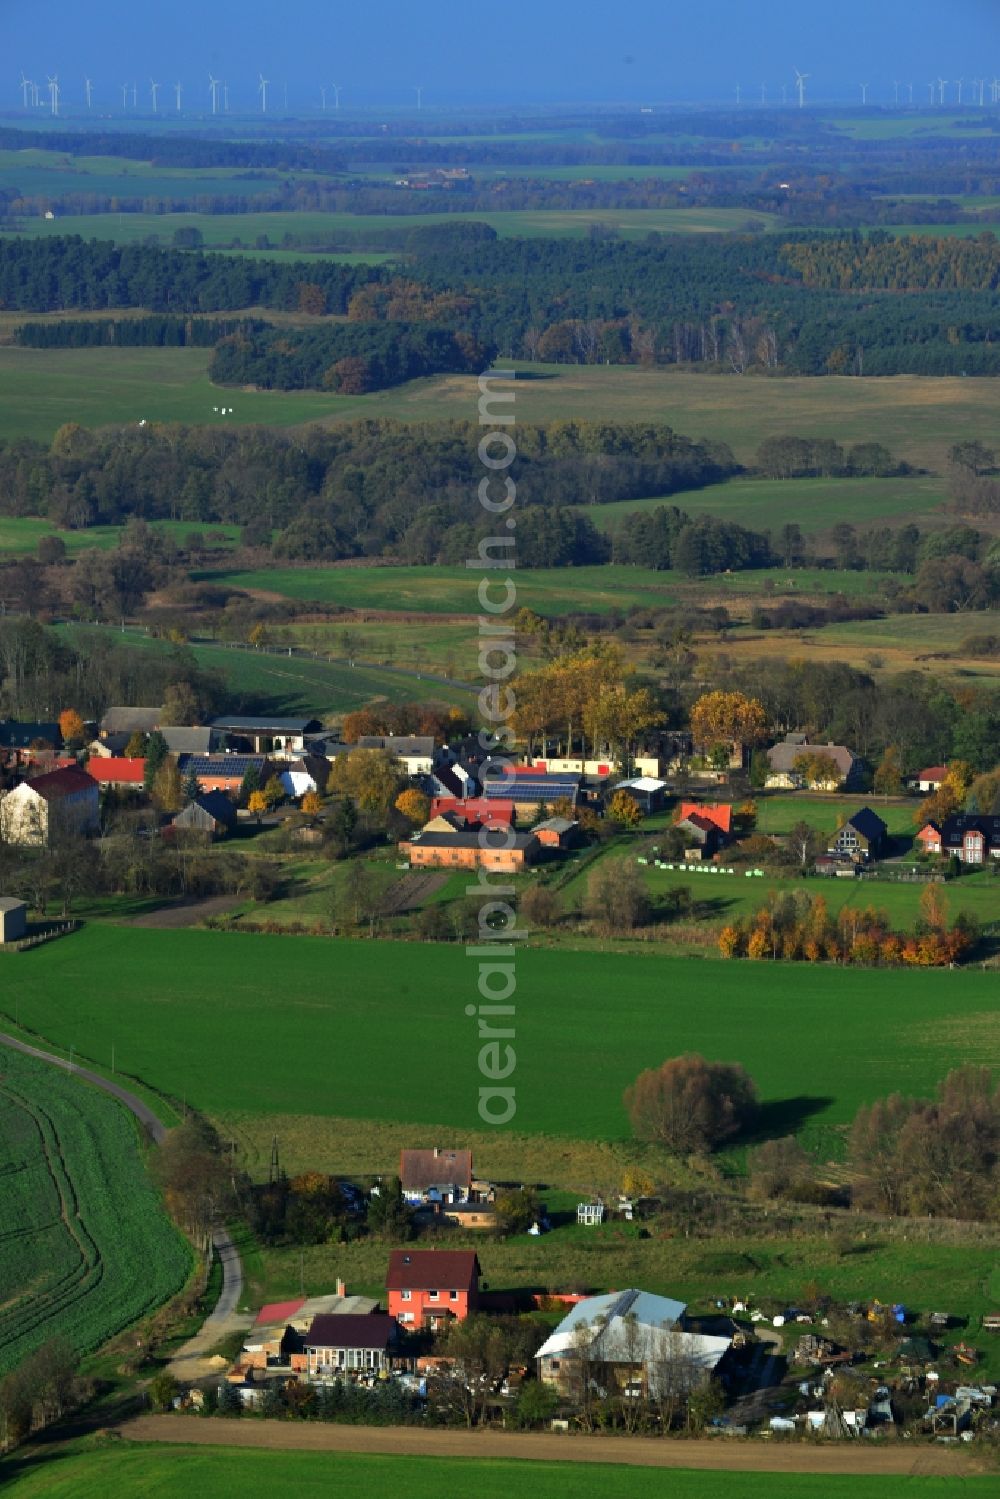 Flieth-Stegelitz from the bird's eye view: Village core Flieth-Stegelitz in Brandenburg